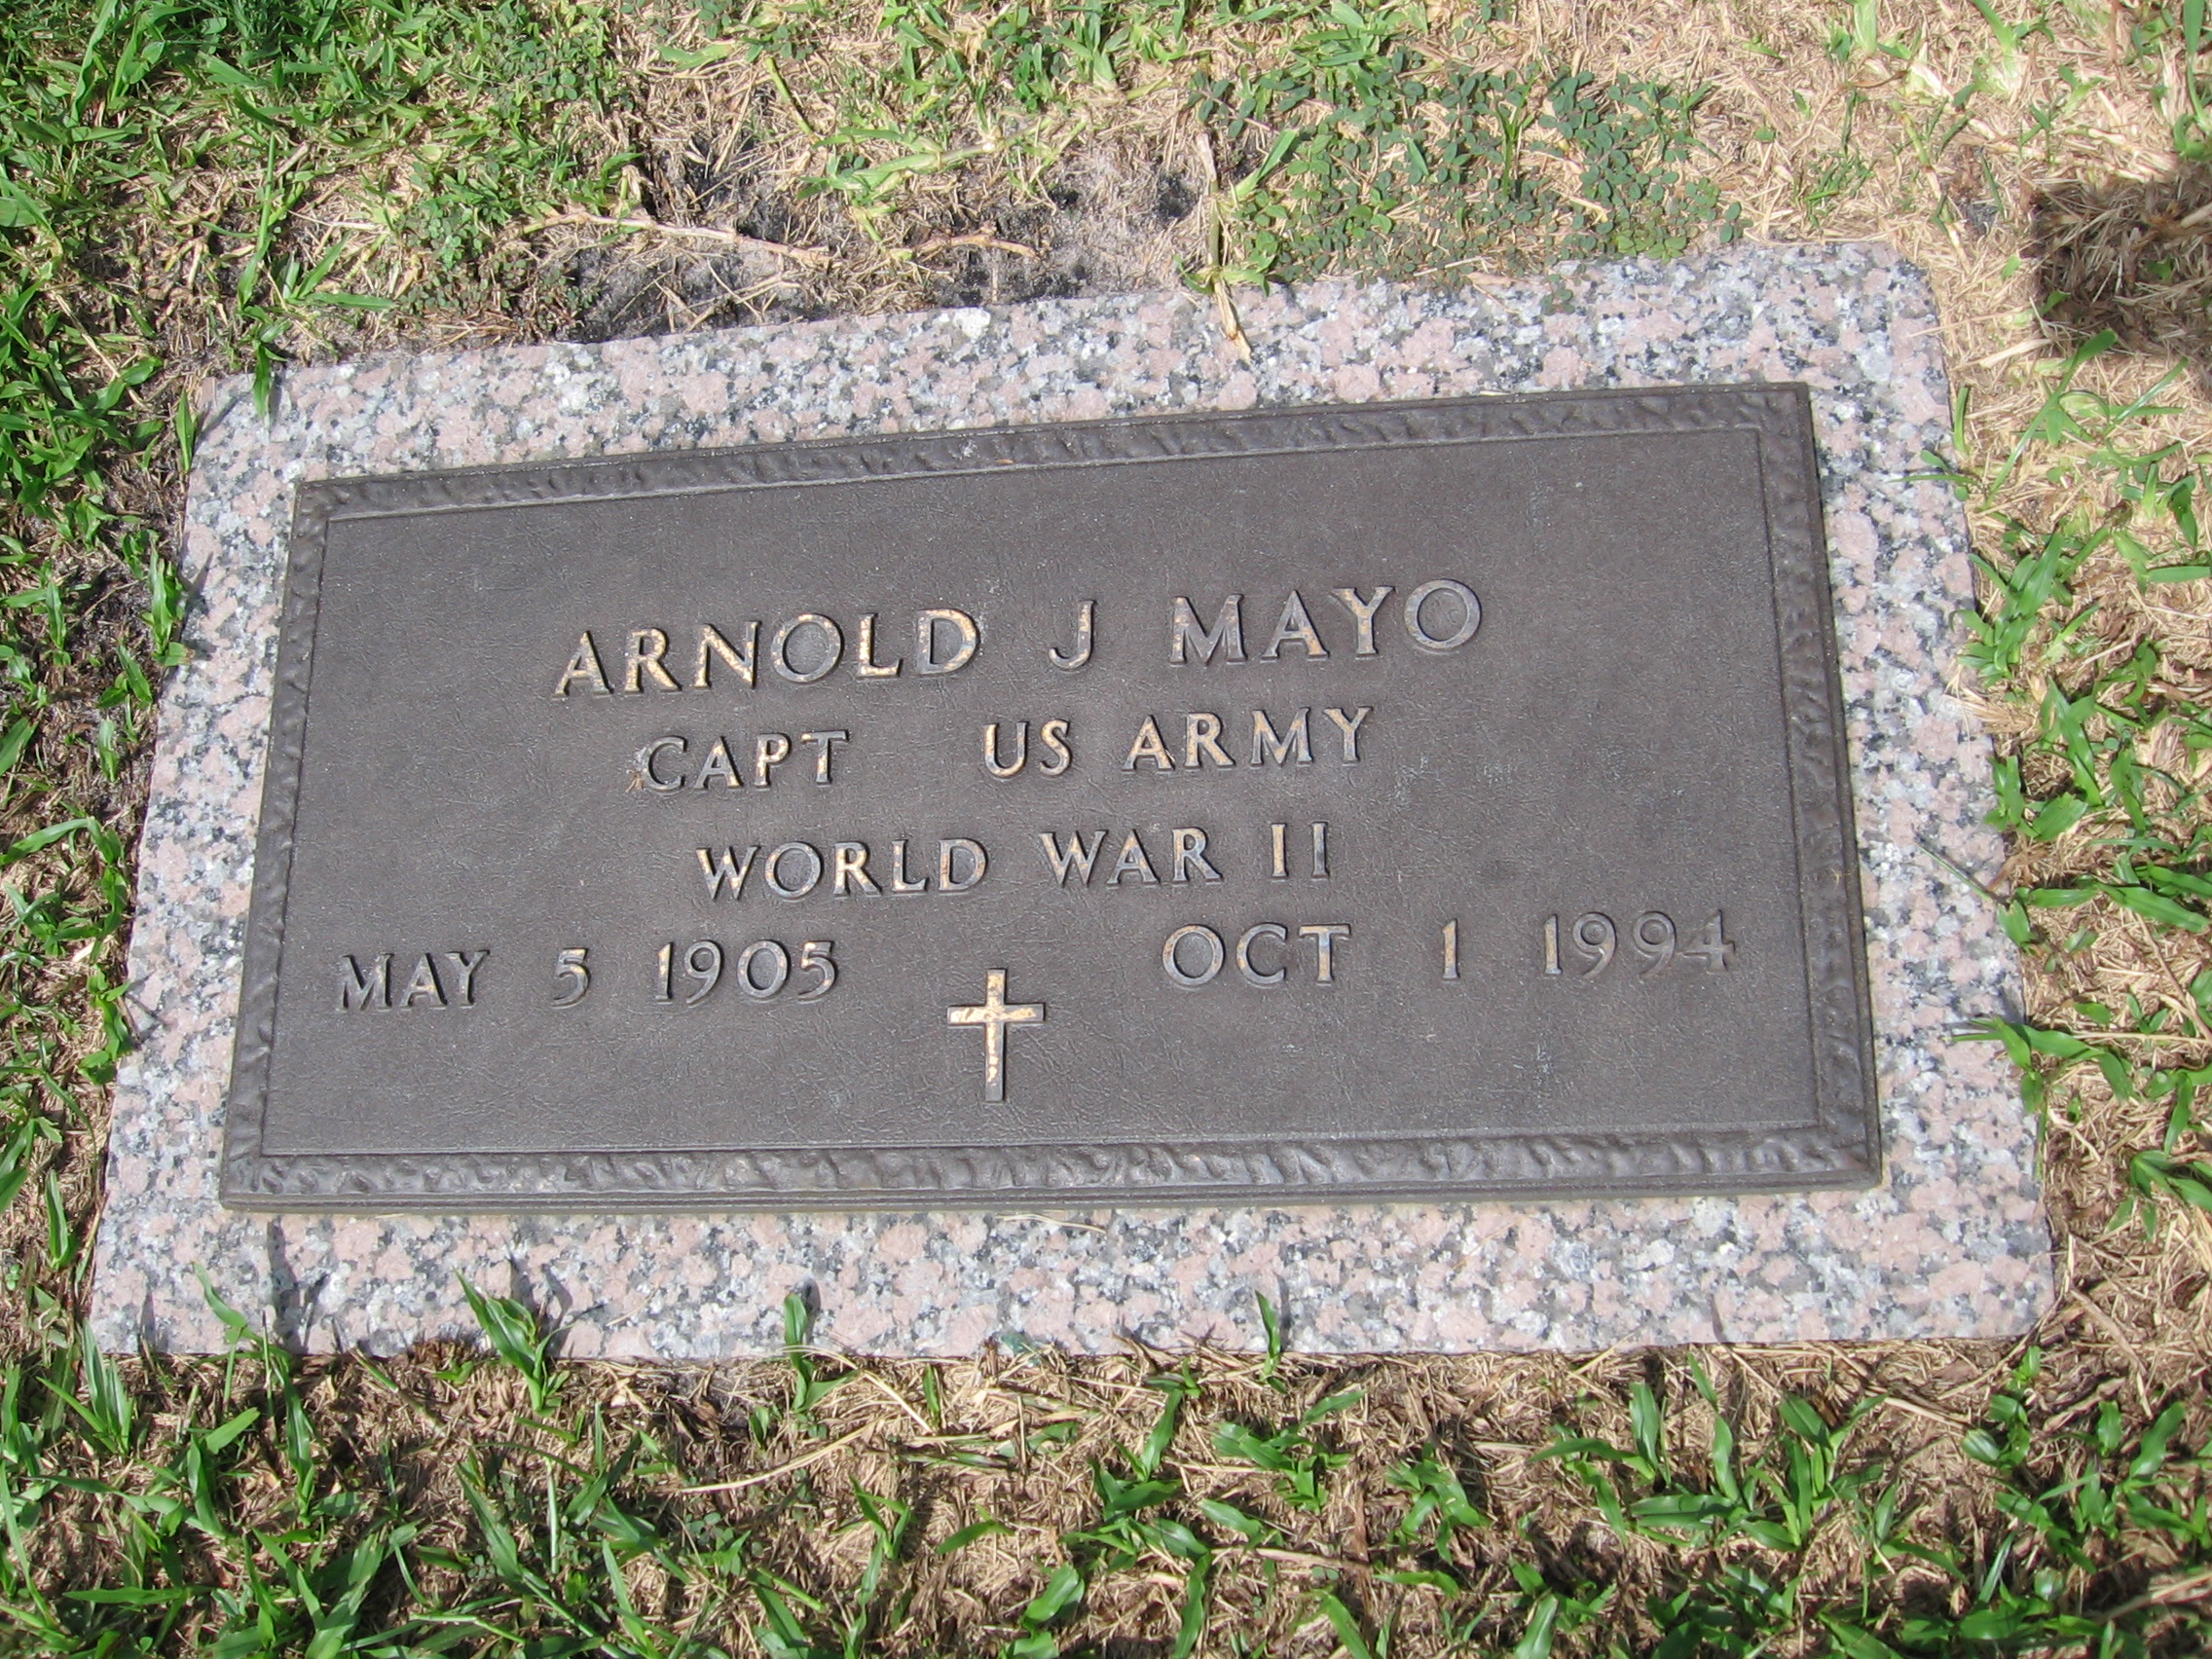 Capt Arnold J Mayo